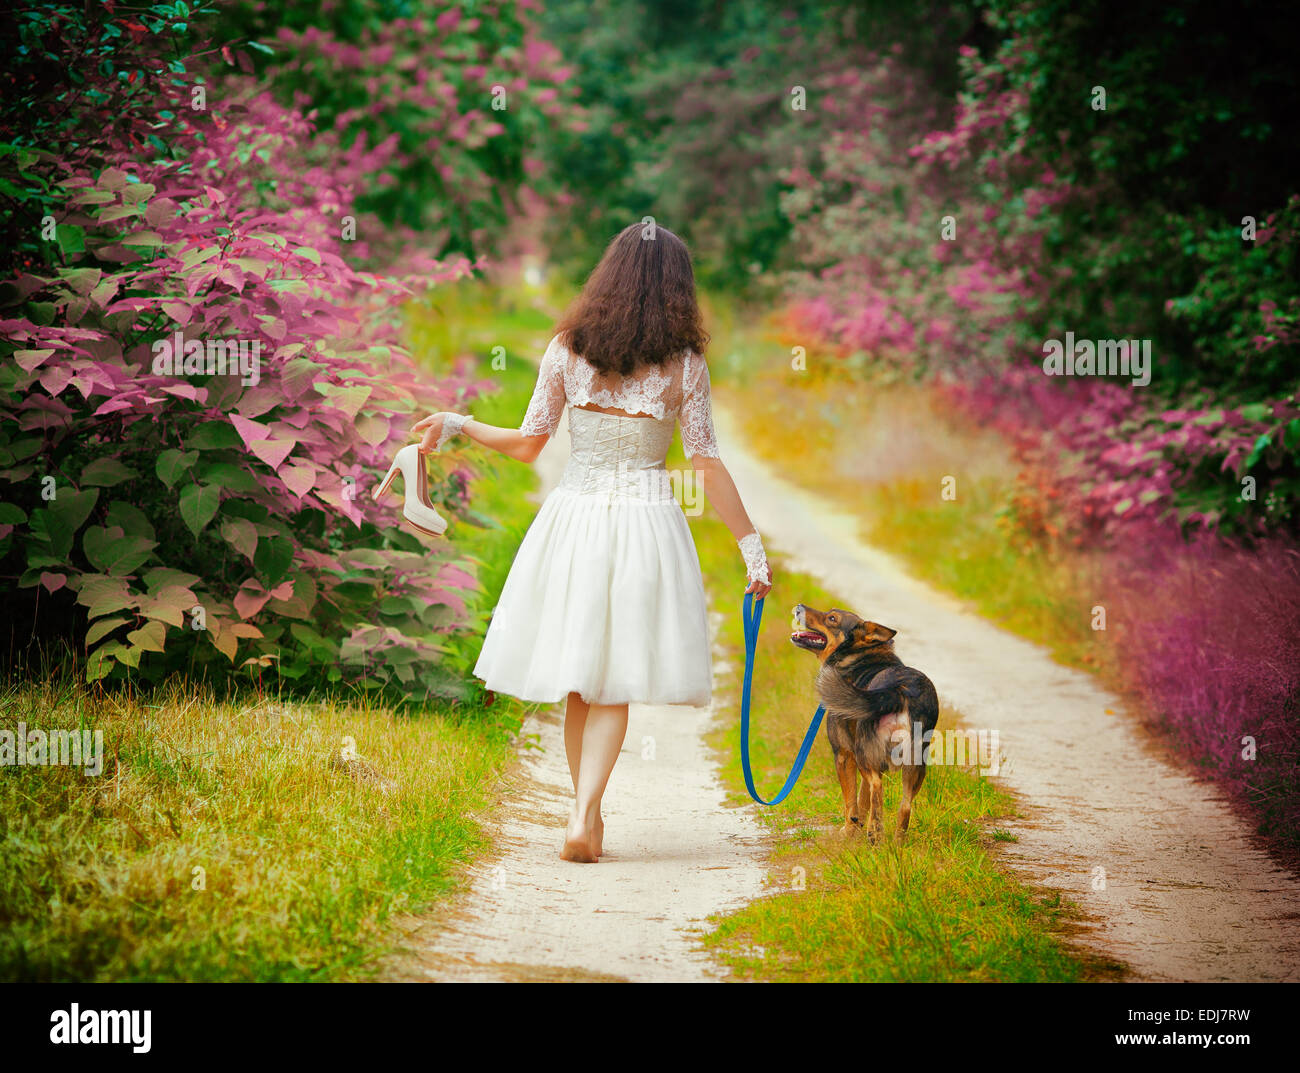 Jeune mariée robe de mariage porter la marche pieds nus avec chien on rural road retour à l'appareil photo. Femme porter chaussures de mariage. Banque D'Images